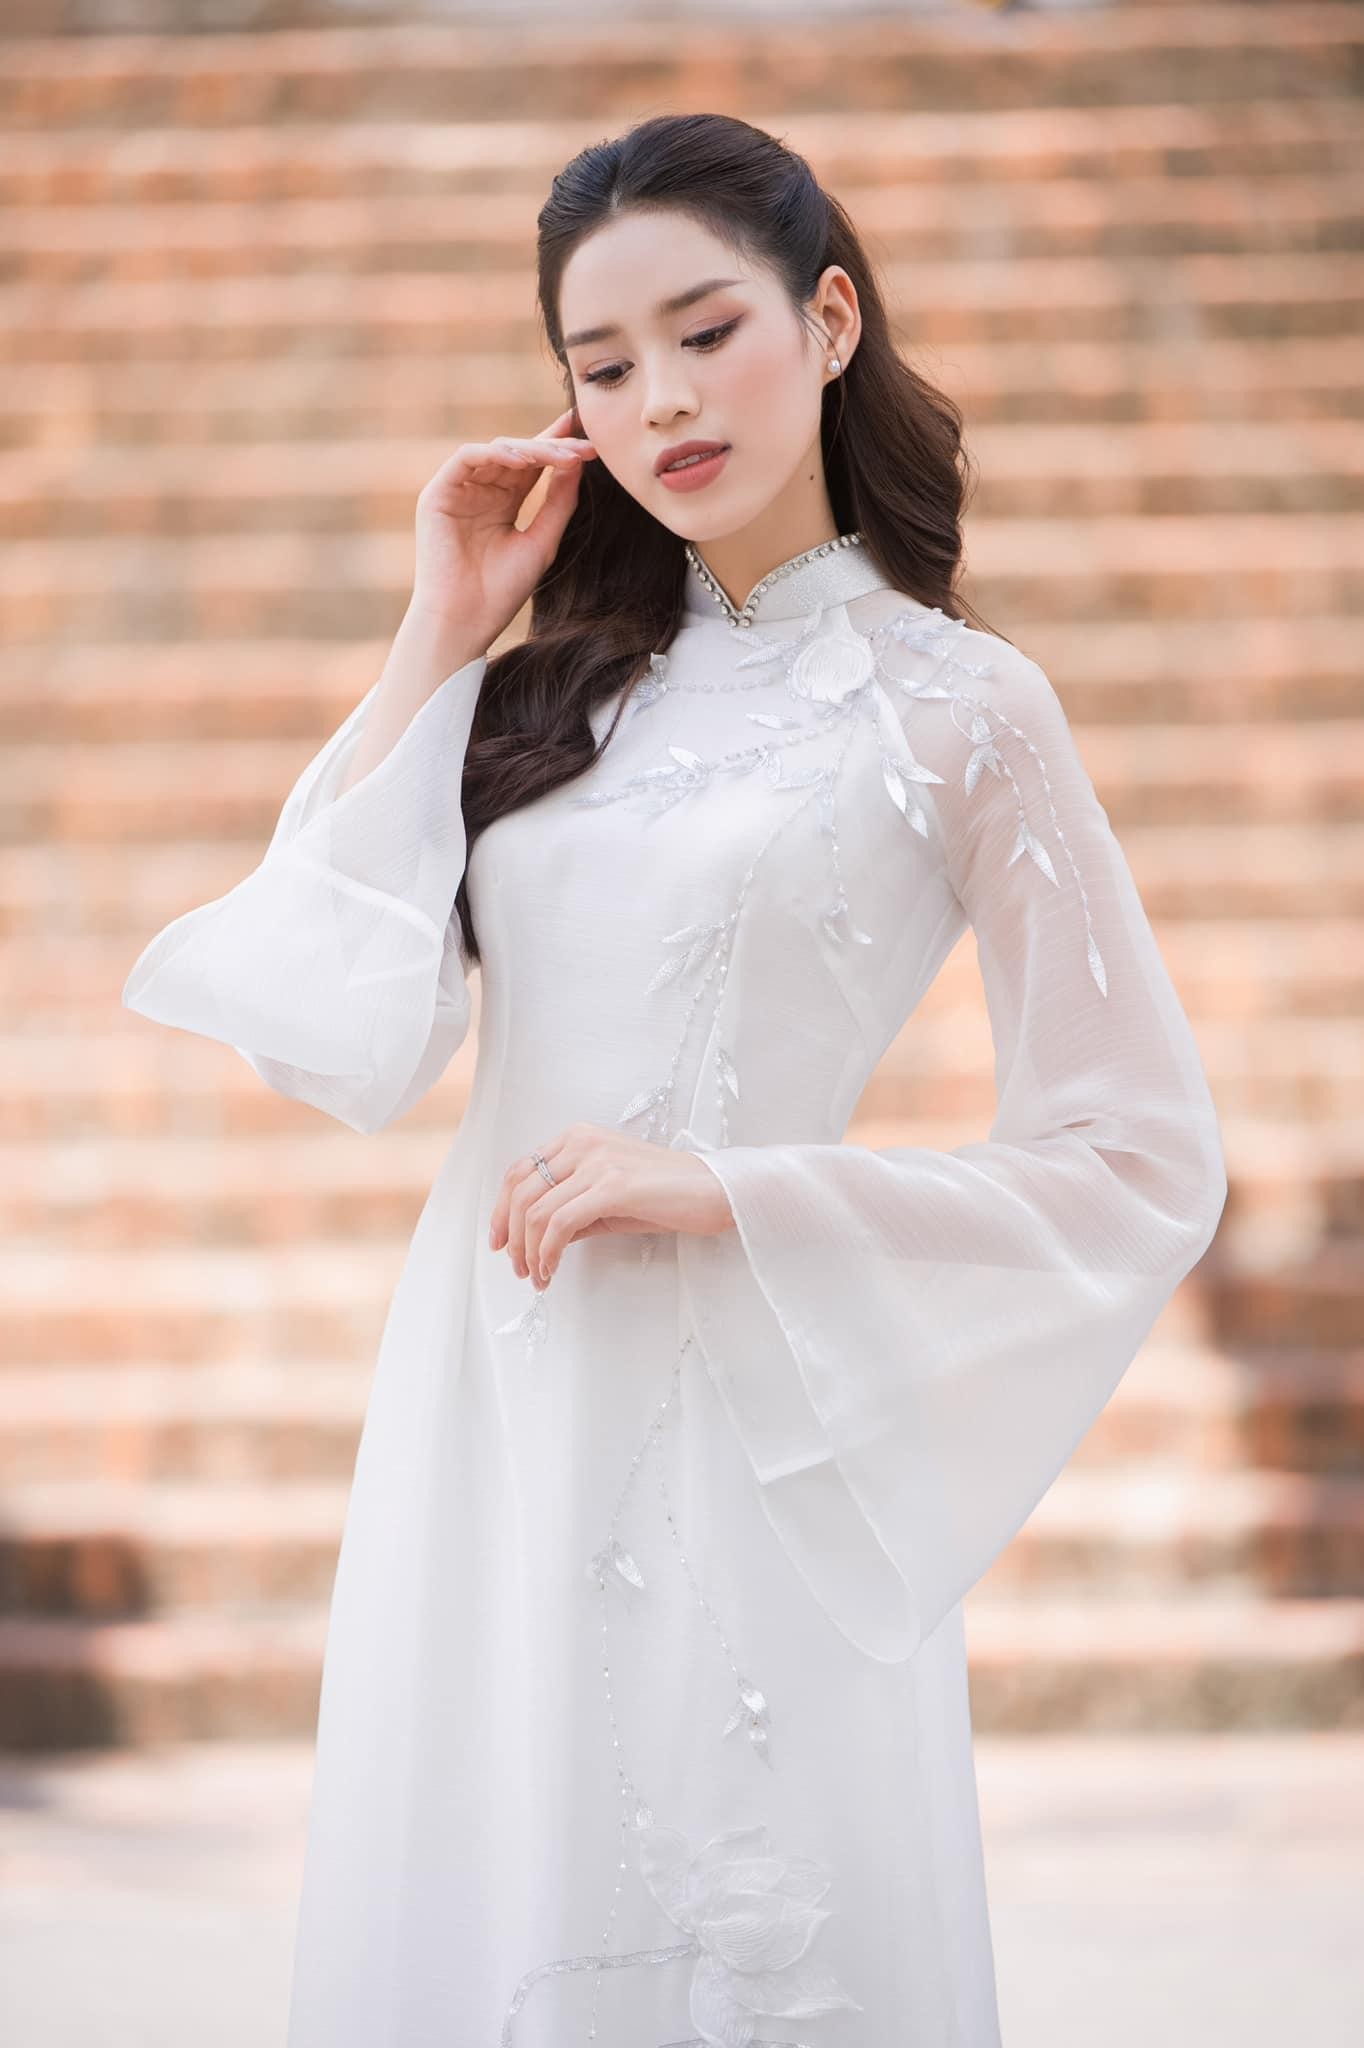 Hoa hậu Đỗ Thị Hà đẹp thuần khiết với áo dài trắng - Ảnh 1.